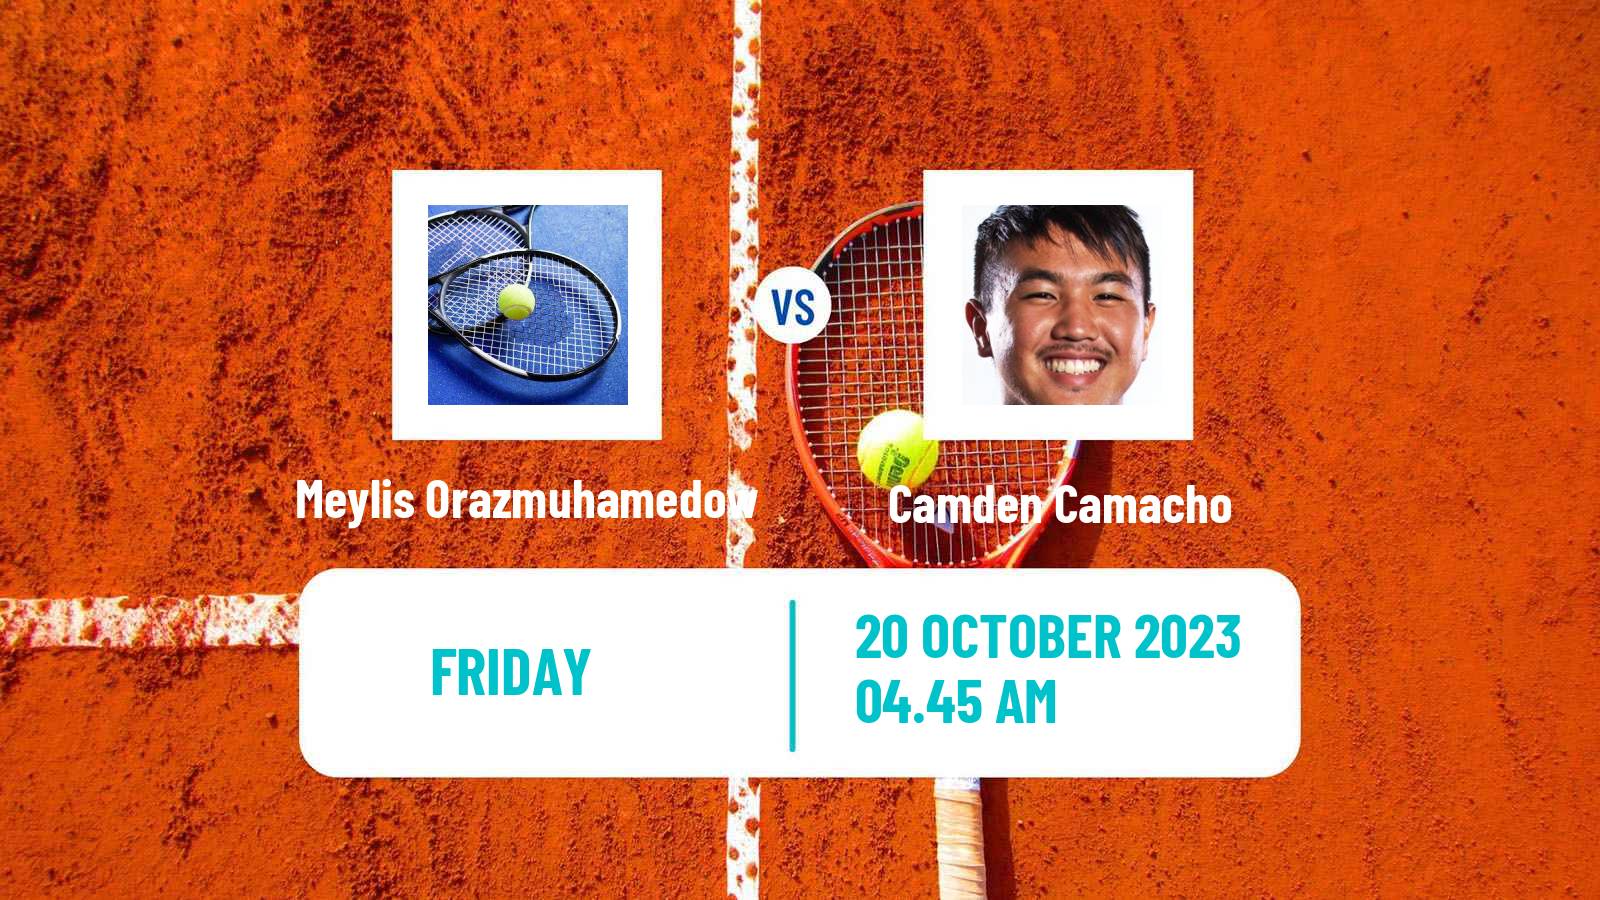 Tennis Davis Cup Group IV Meylis Orazmuhamedow - Camden Camacho